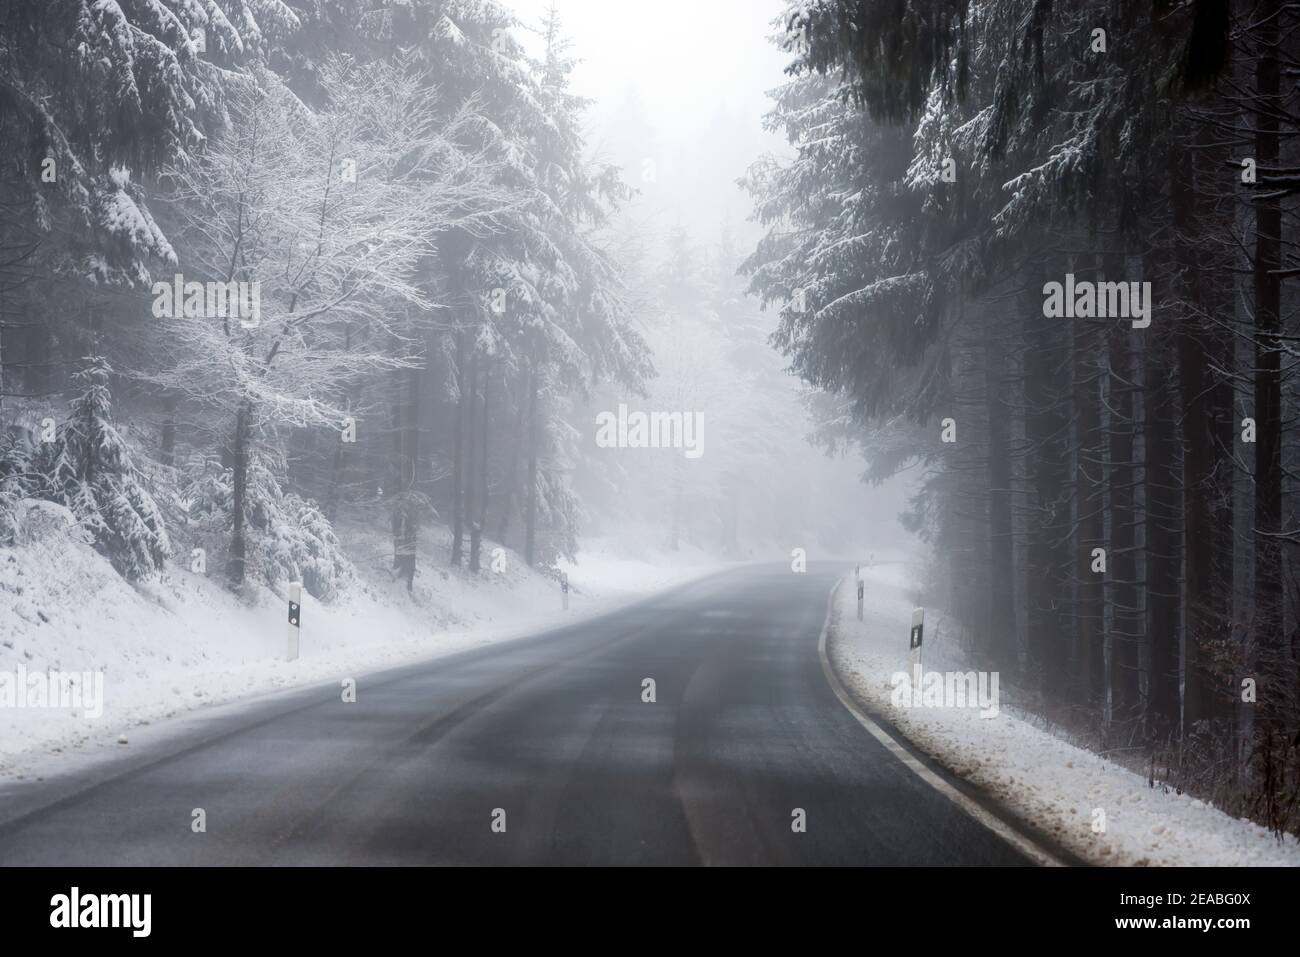 Winterberg, pays aigre, Rhénanie-du-Nord-Westphalie, Allemagne - paysage enneigé dans la forêt avec une route de campagne vide. Banque D'Images